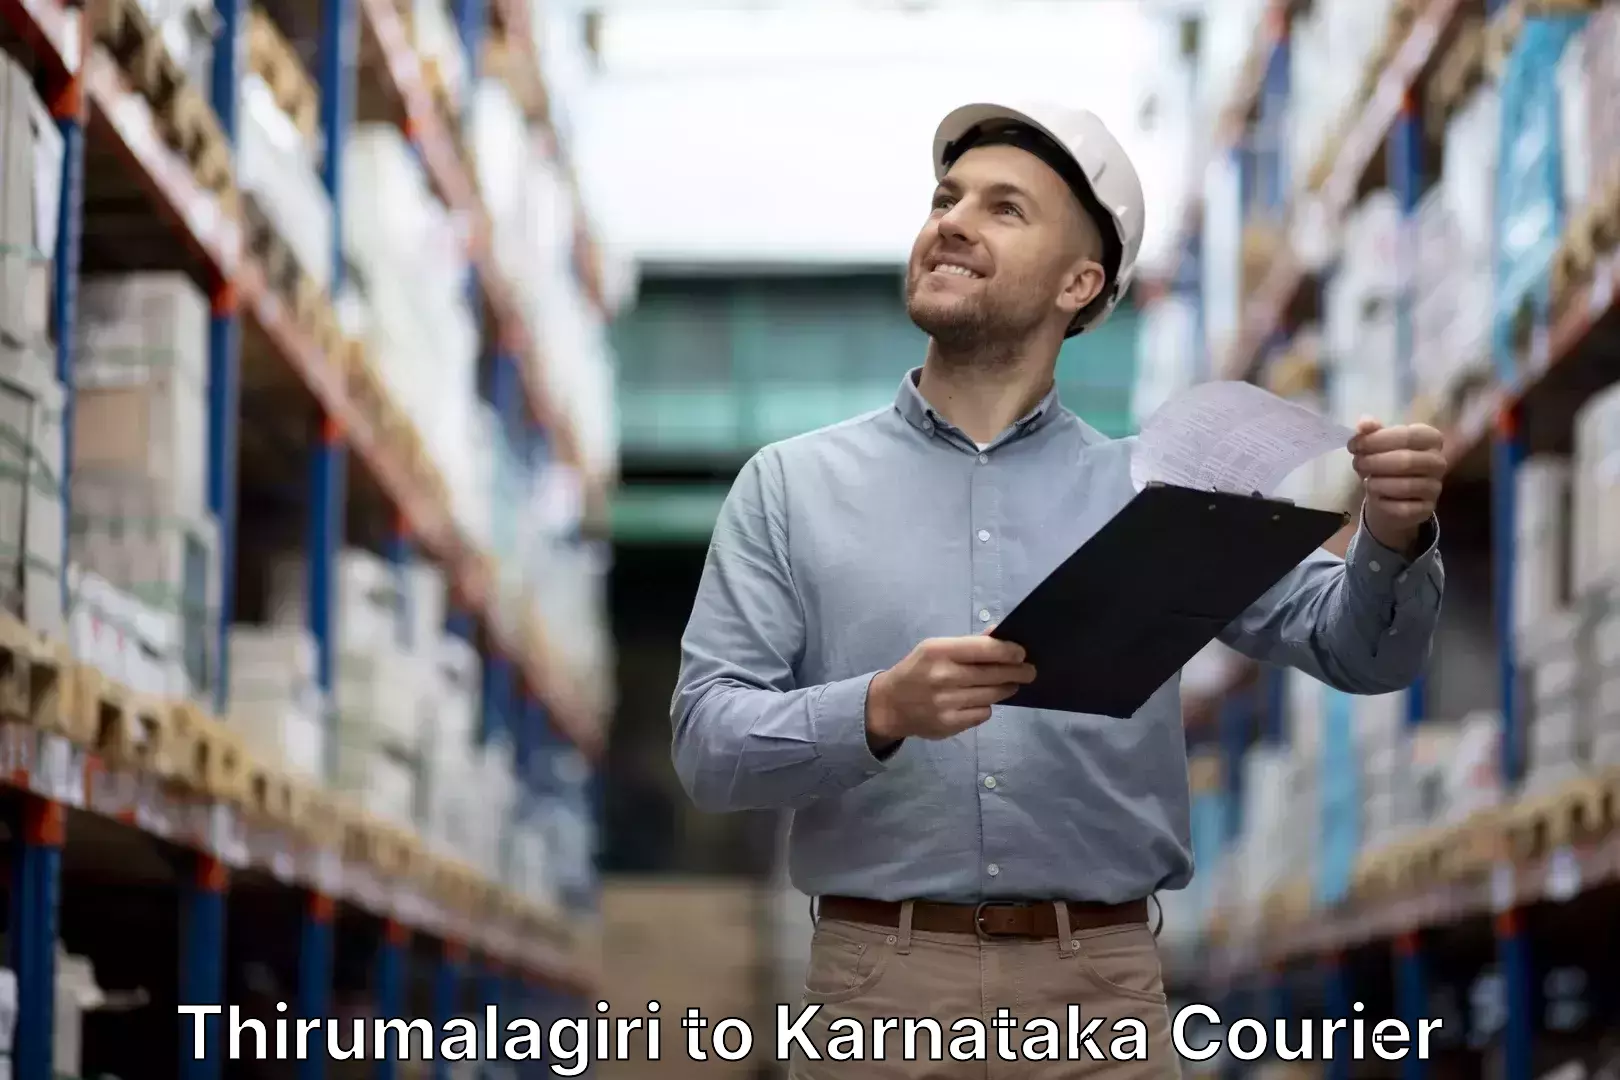 Luggage courier network Thirumalagiri to Karnataka